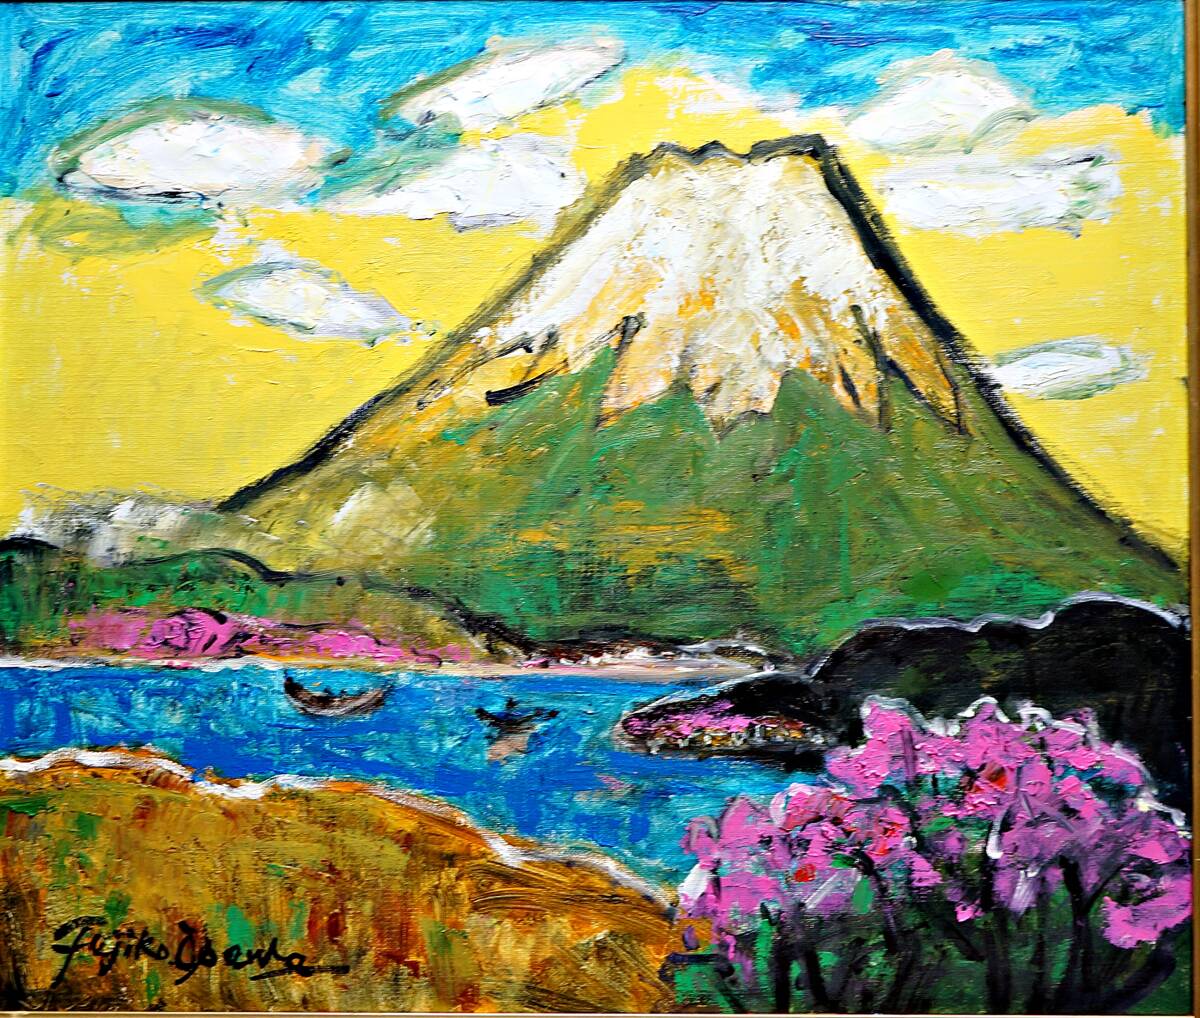 FUJIKO ■ Fuji ■ Grand format F10 ■ Authenticité garantie (certificat de travail inclus) ■ Nouvellement encadré (couleur marron) ■ Peinture à l'huile, peinture, peinture à l'huile, Nature, Peinture de paysage